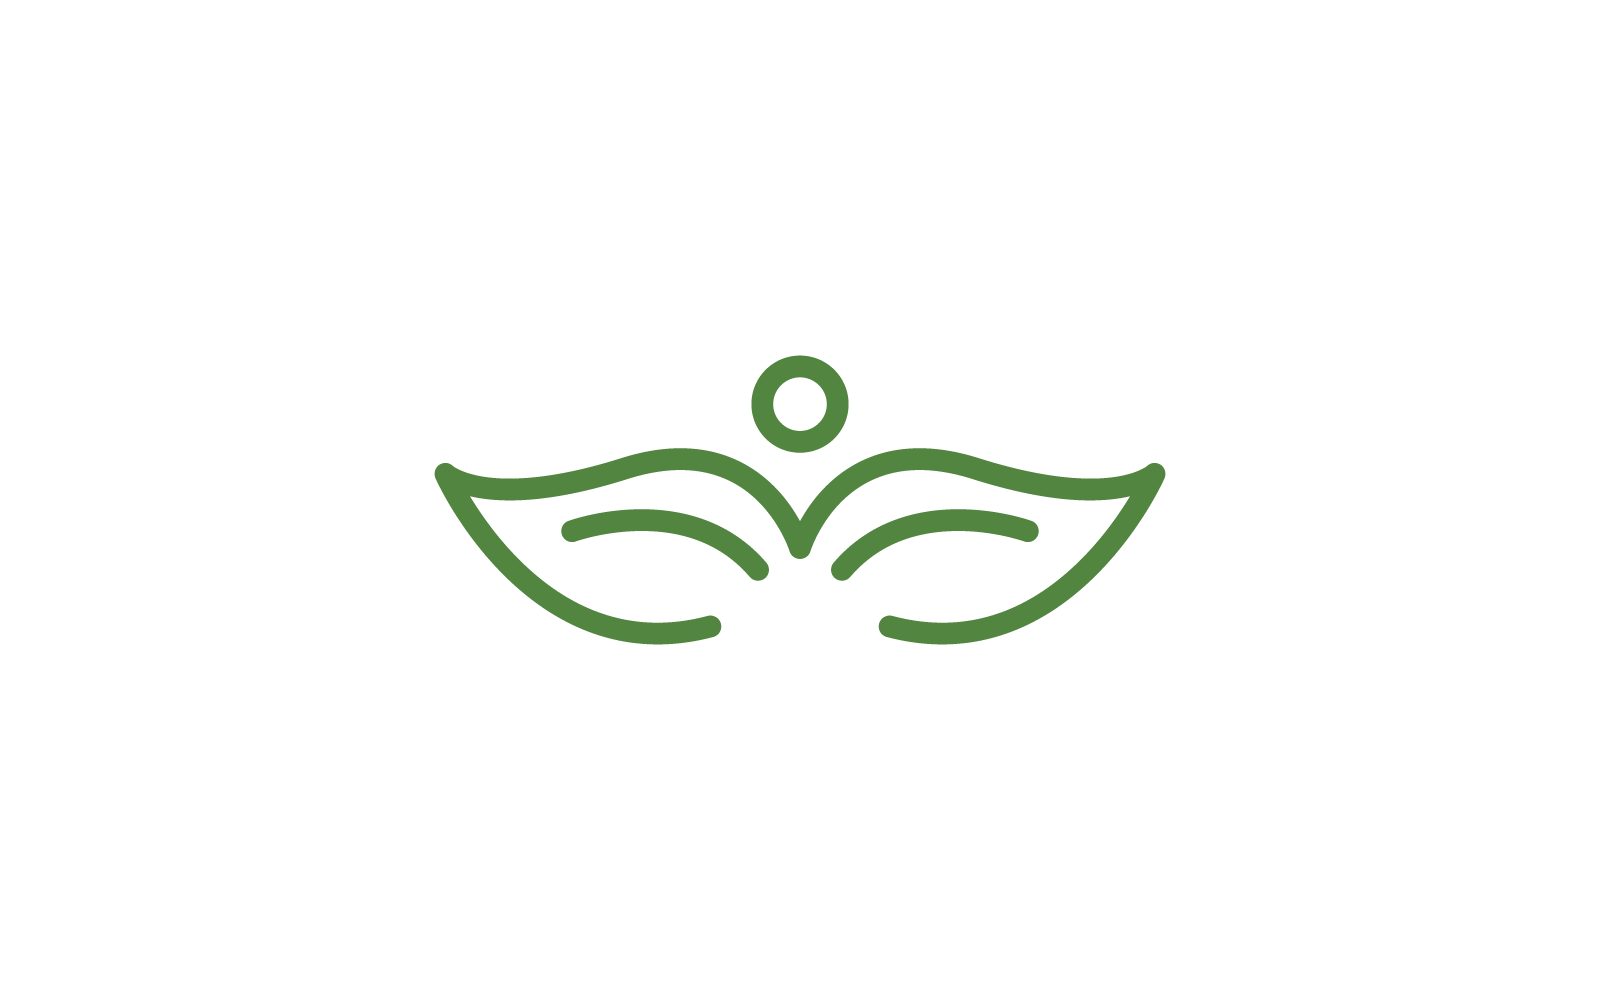 Green leaf logo illustration nature flat design